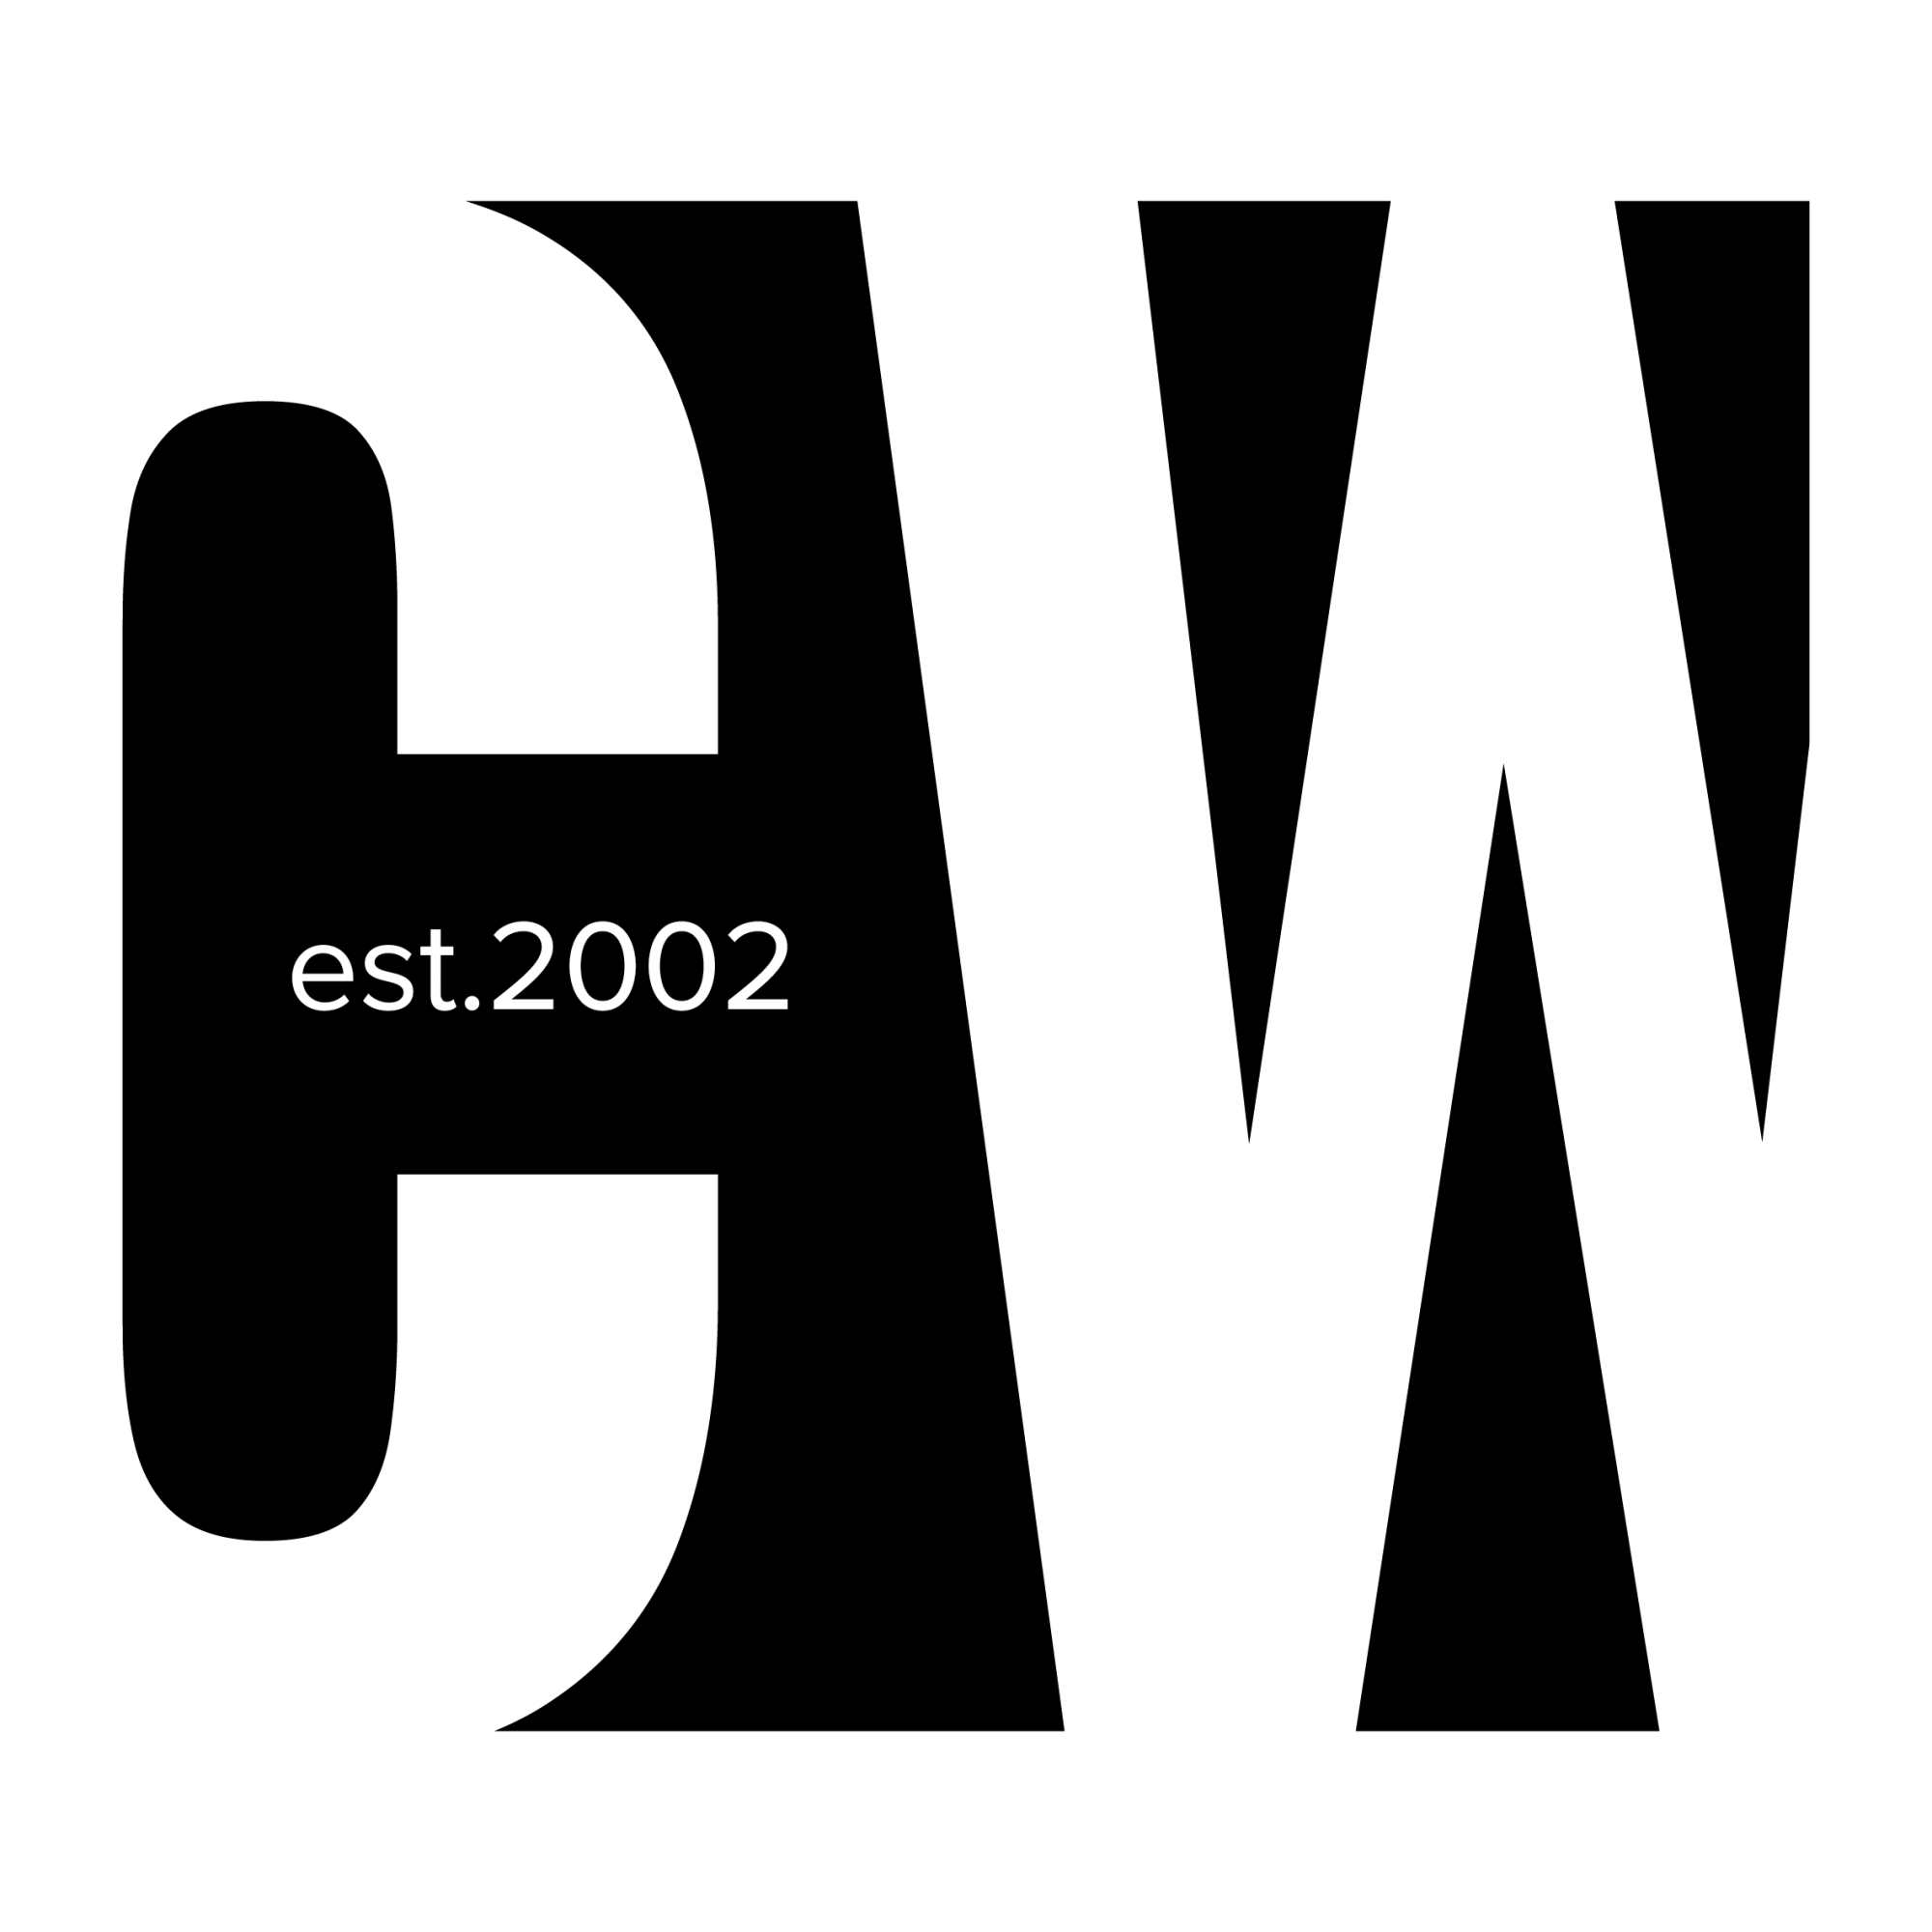 CW-est2002-small-logo-black